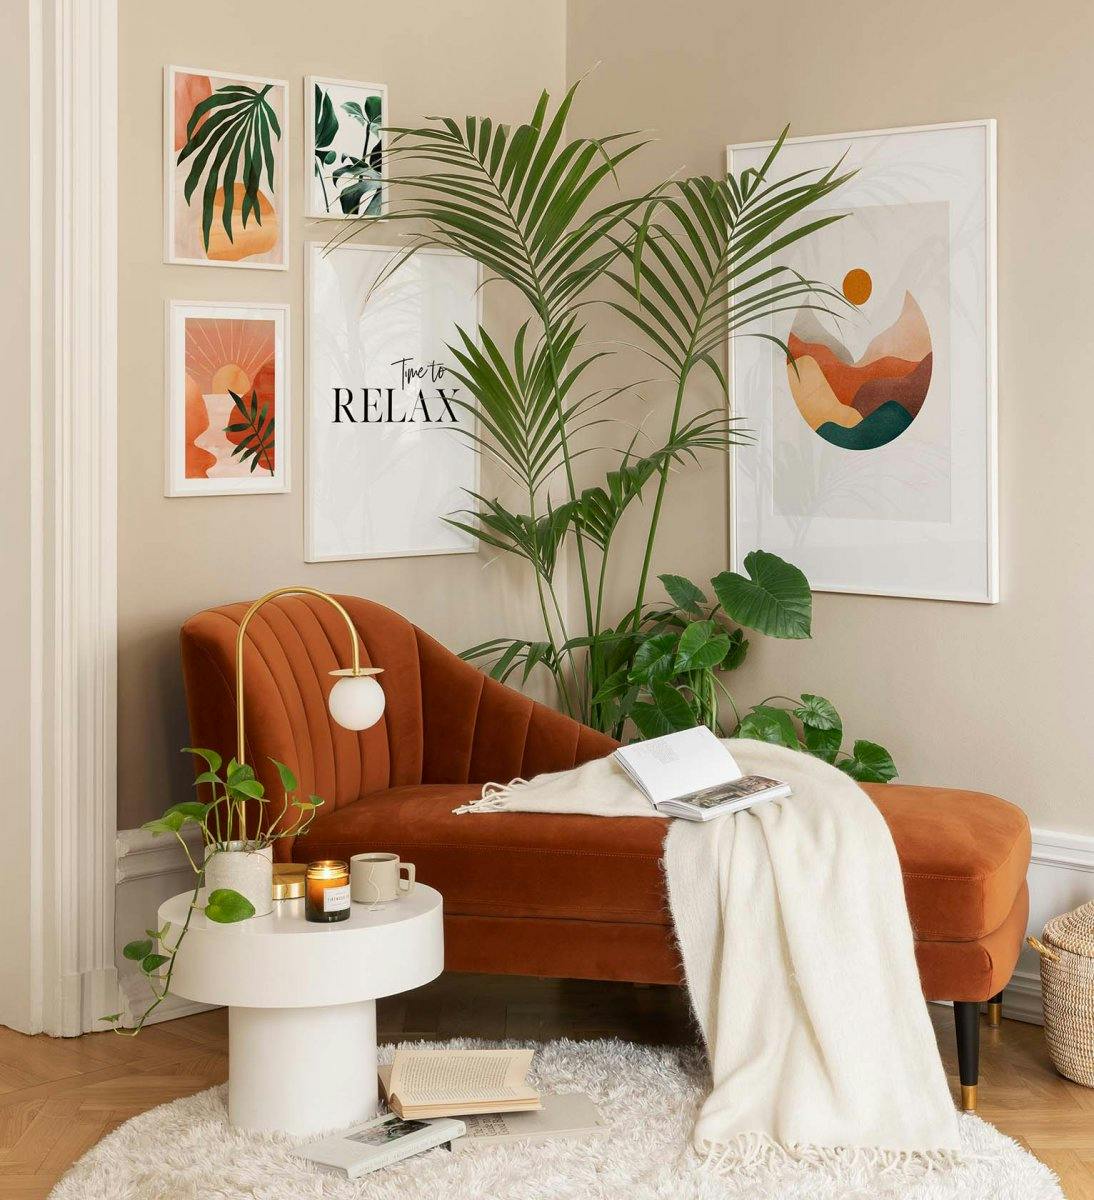 시선을 사로잡는 주황색과 녹색 색상의 그래픽 아트가 인상적인 거실 또는 침실을 위한 갤러리월